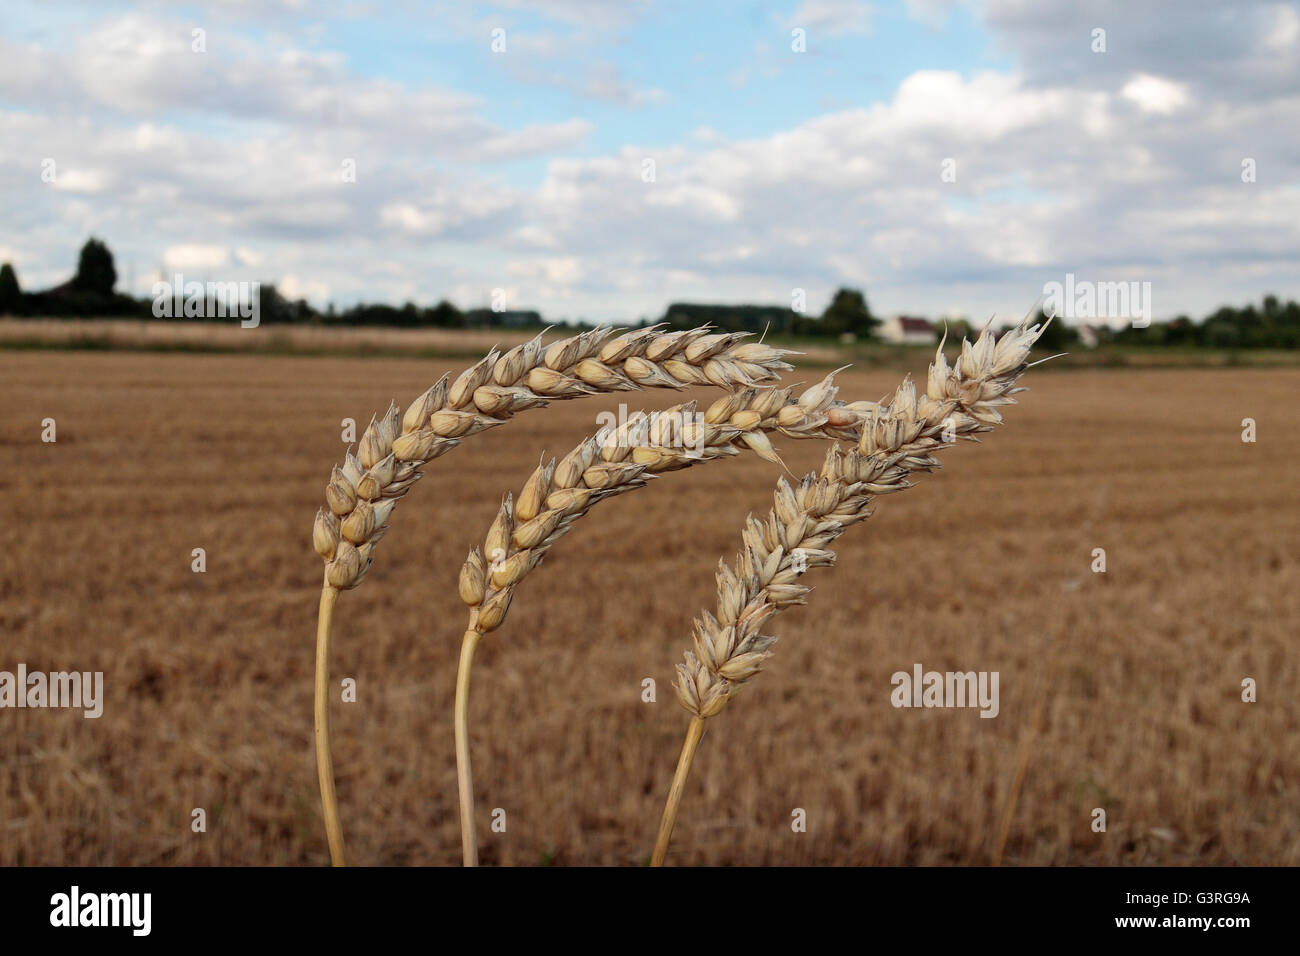 Trois tiges de blé tendre (Triticum aestivum blé/pain) avec un champ moissonné de derrière, dans le Nord de la France. Banque D'Images